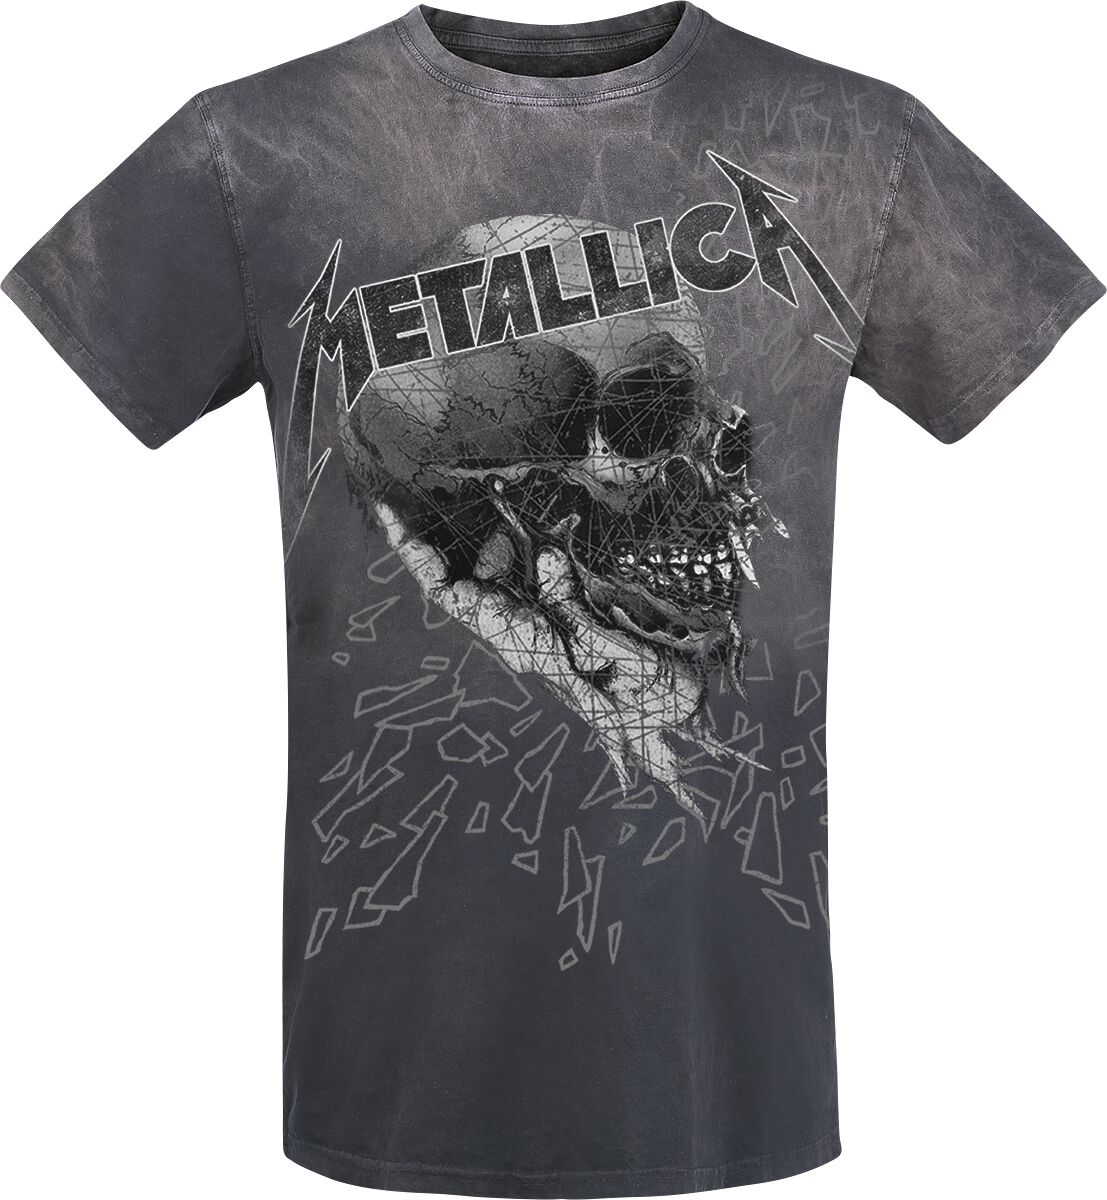 Metallica T-Shirt - Sad But True Skull - M bis 4XL - für Männer - Größe XL - dunkelgrau  - EMP exklusives Merchandise!